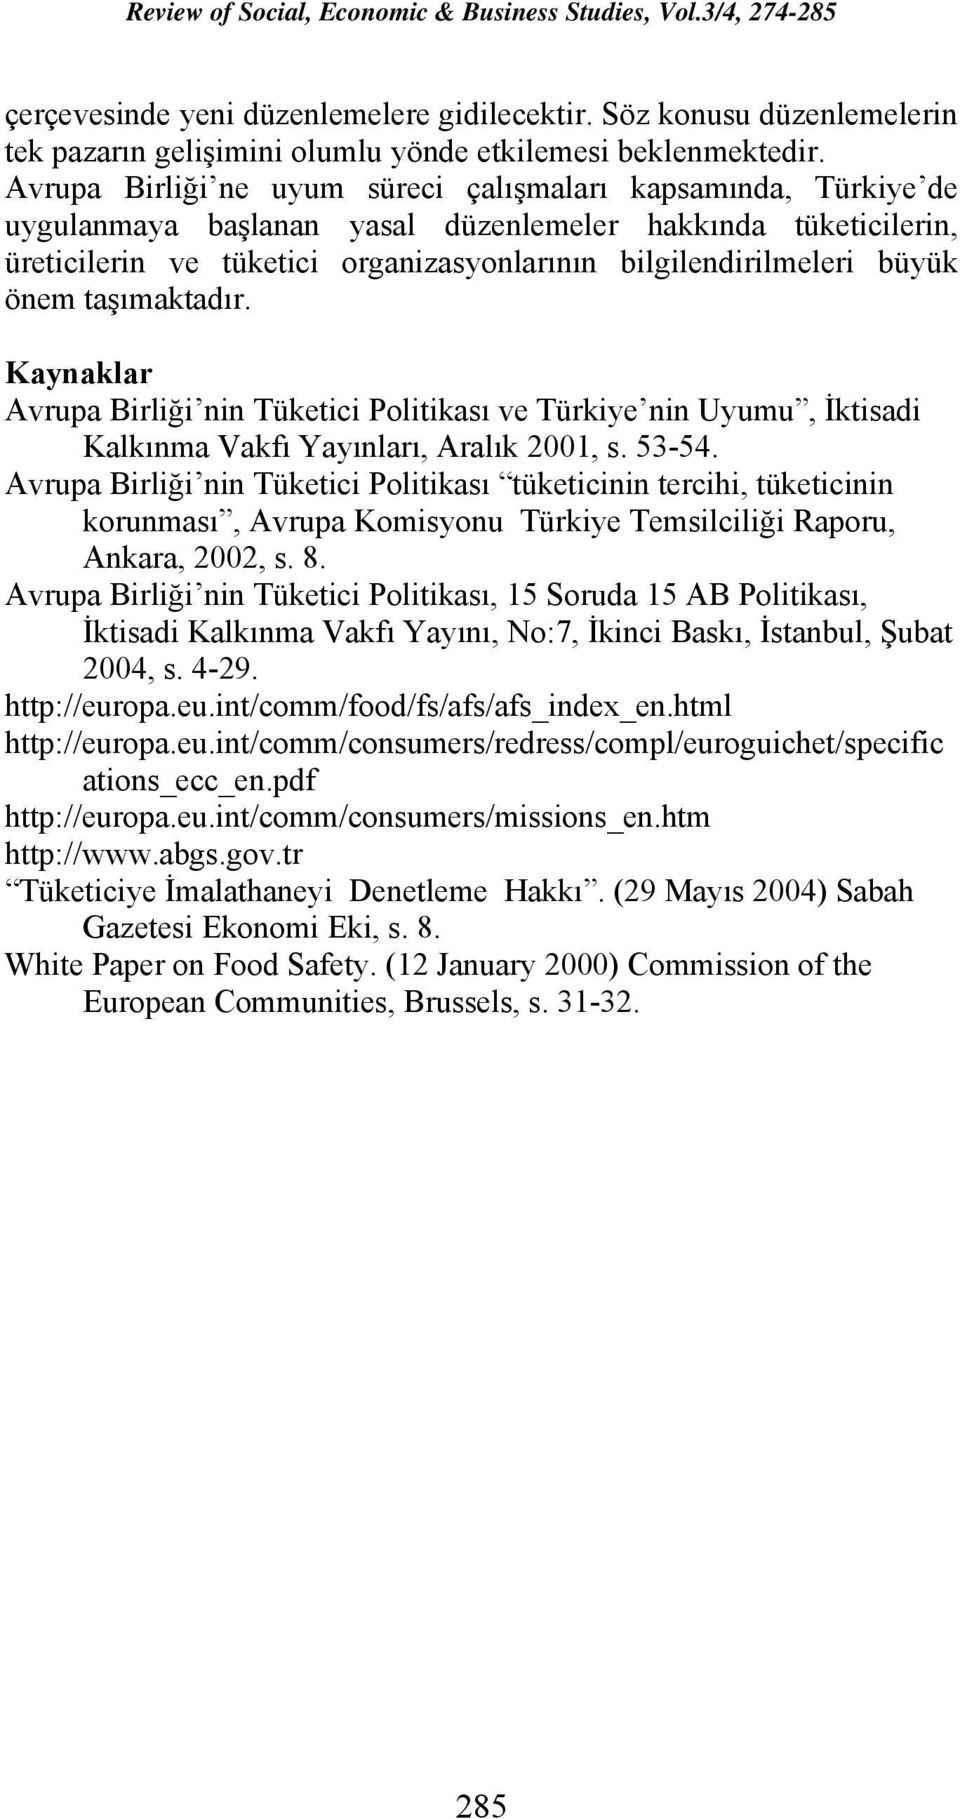 önem taşımaktadır. Kaynaklar Avrupa Birliği nin Tüketici Politikası ve Türkiye nin Uyumu, İktisadi Kalkınma Vakfı Yayınları, Aralık 2001, s. 53-54.